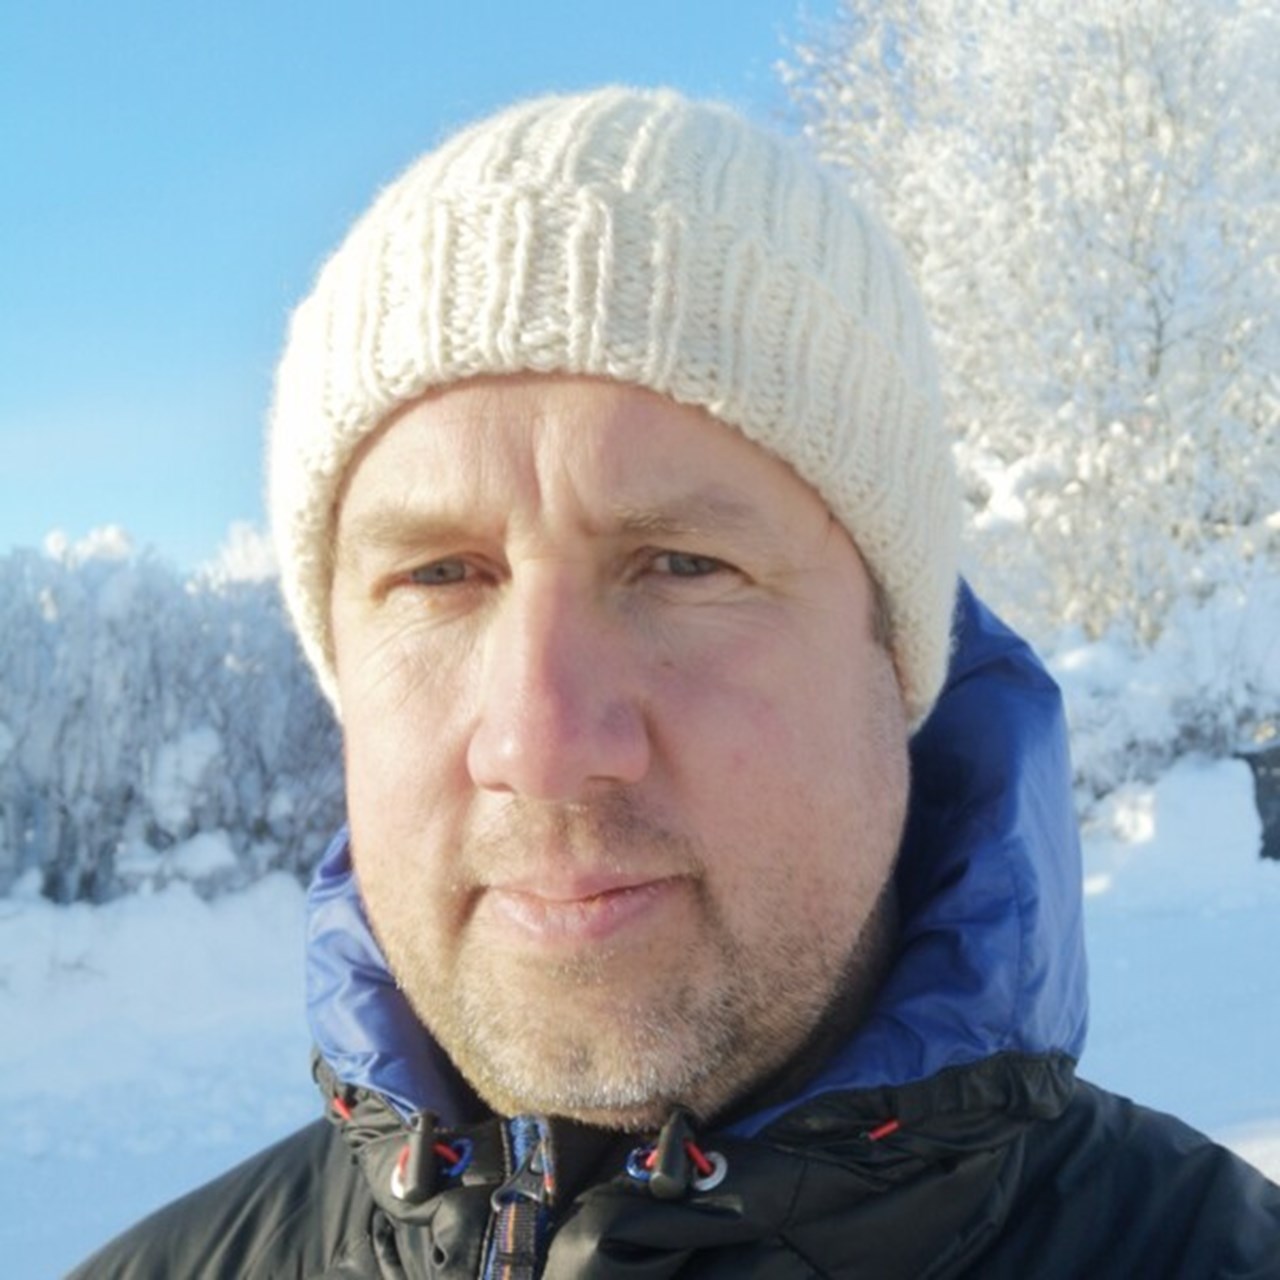 Portrtättbild på Martin Maripuu utomhus på vintern med mössa på